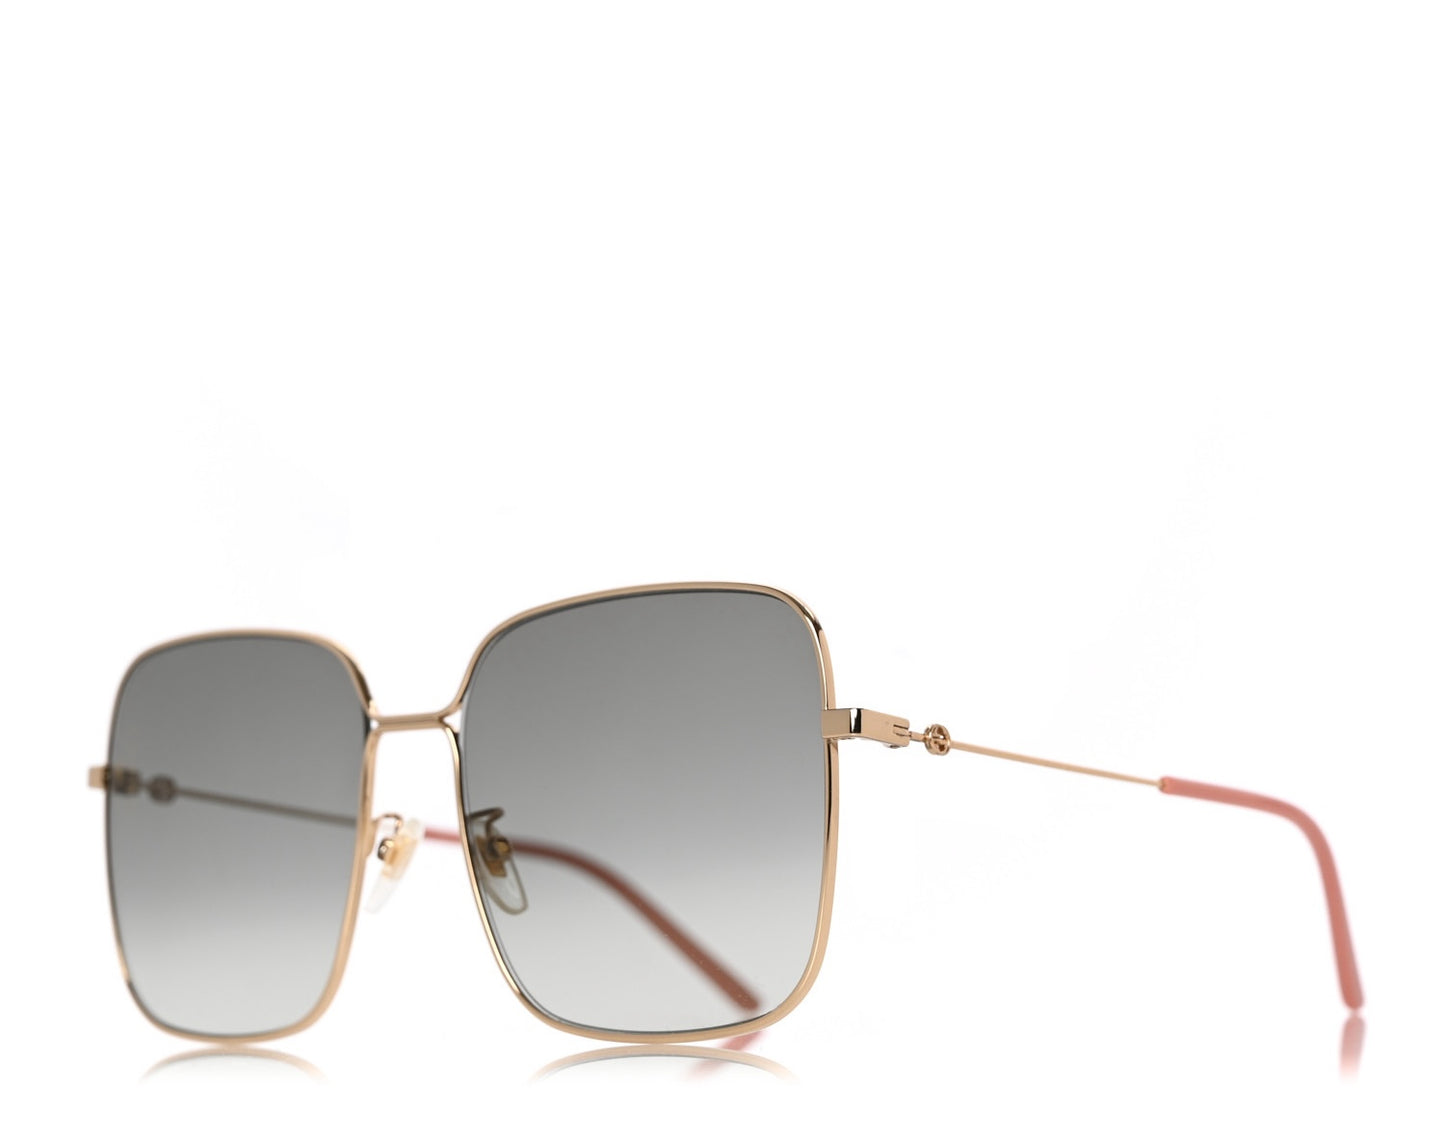 Gucci GG0443S-001 60mm New Sunglasses